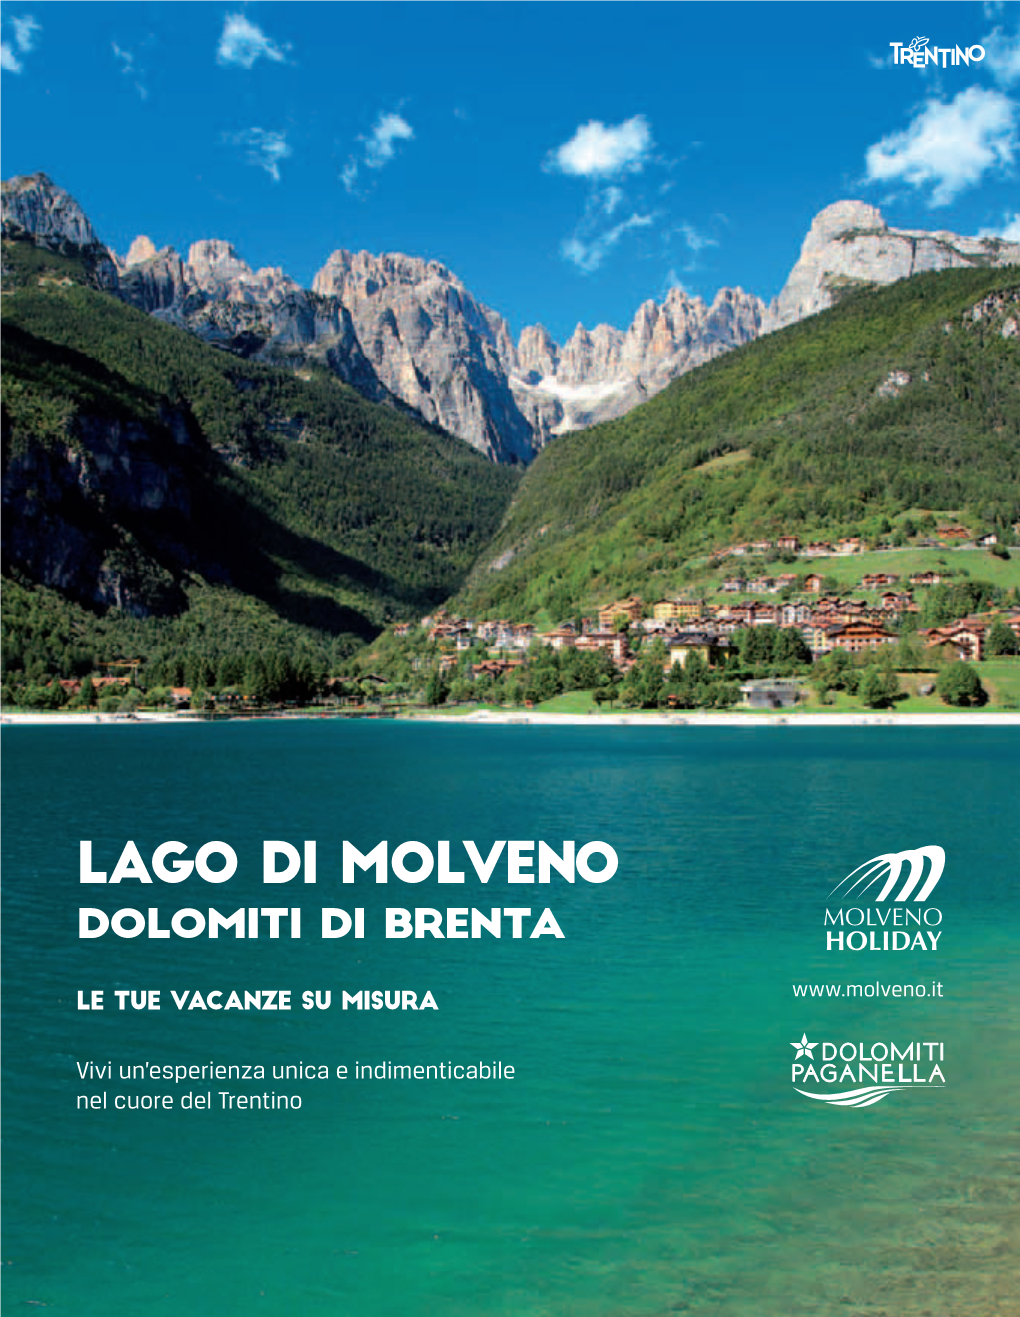 Lago Di Molveno La Strada PER Sei Anni Di Seguito Giusta Per Vivere Una Vacanza Il Lago Piu Bello D’Italia a Contatto Con La Natura